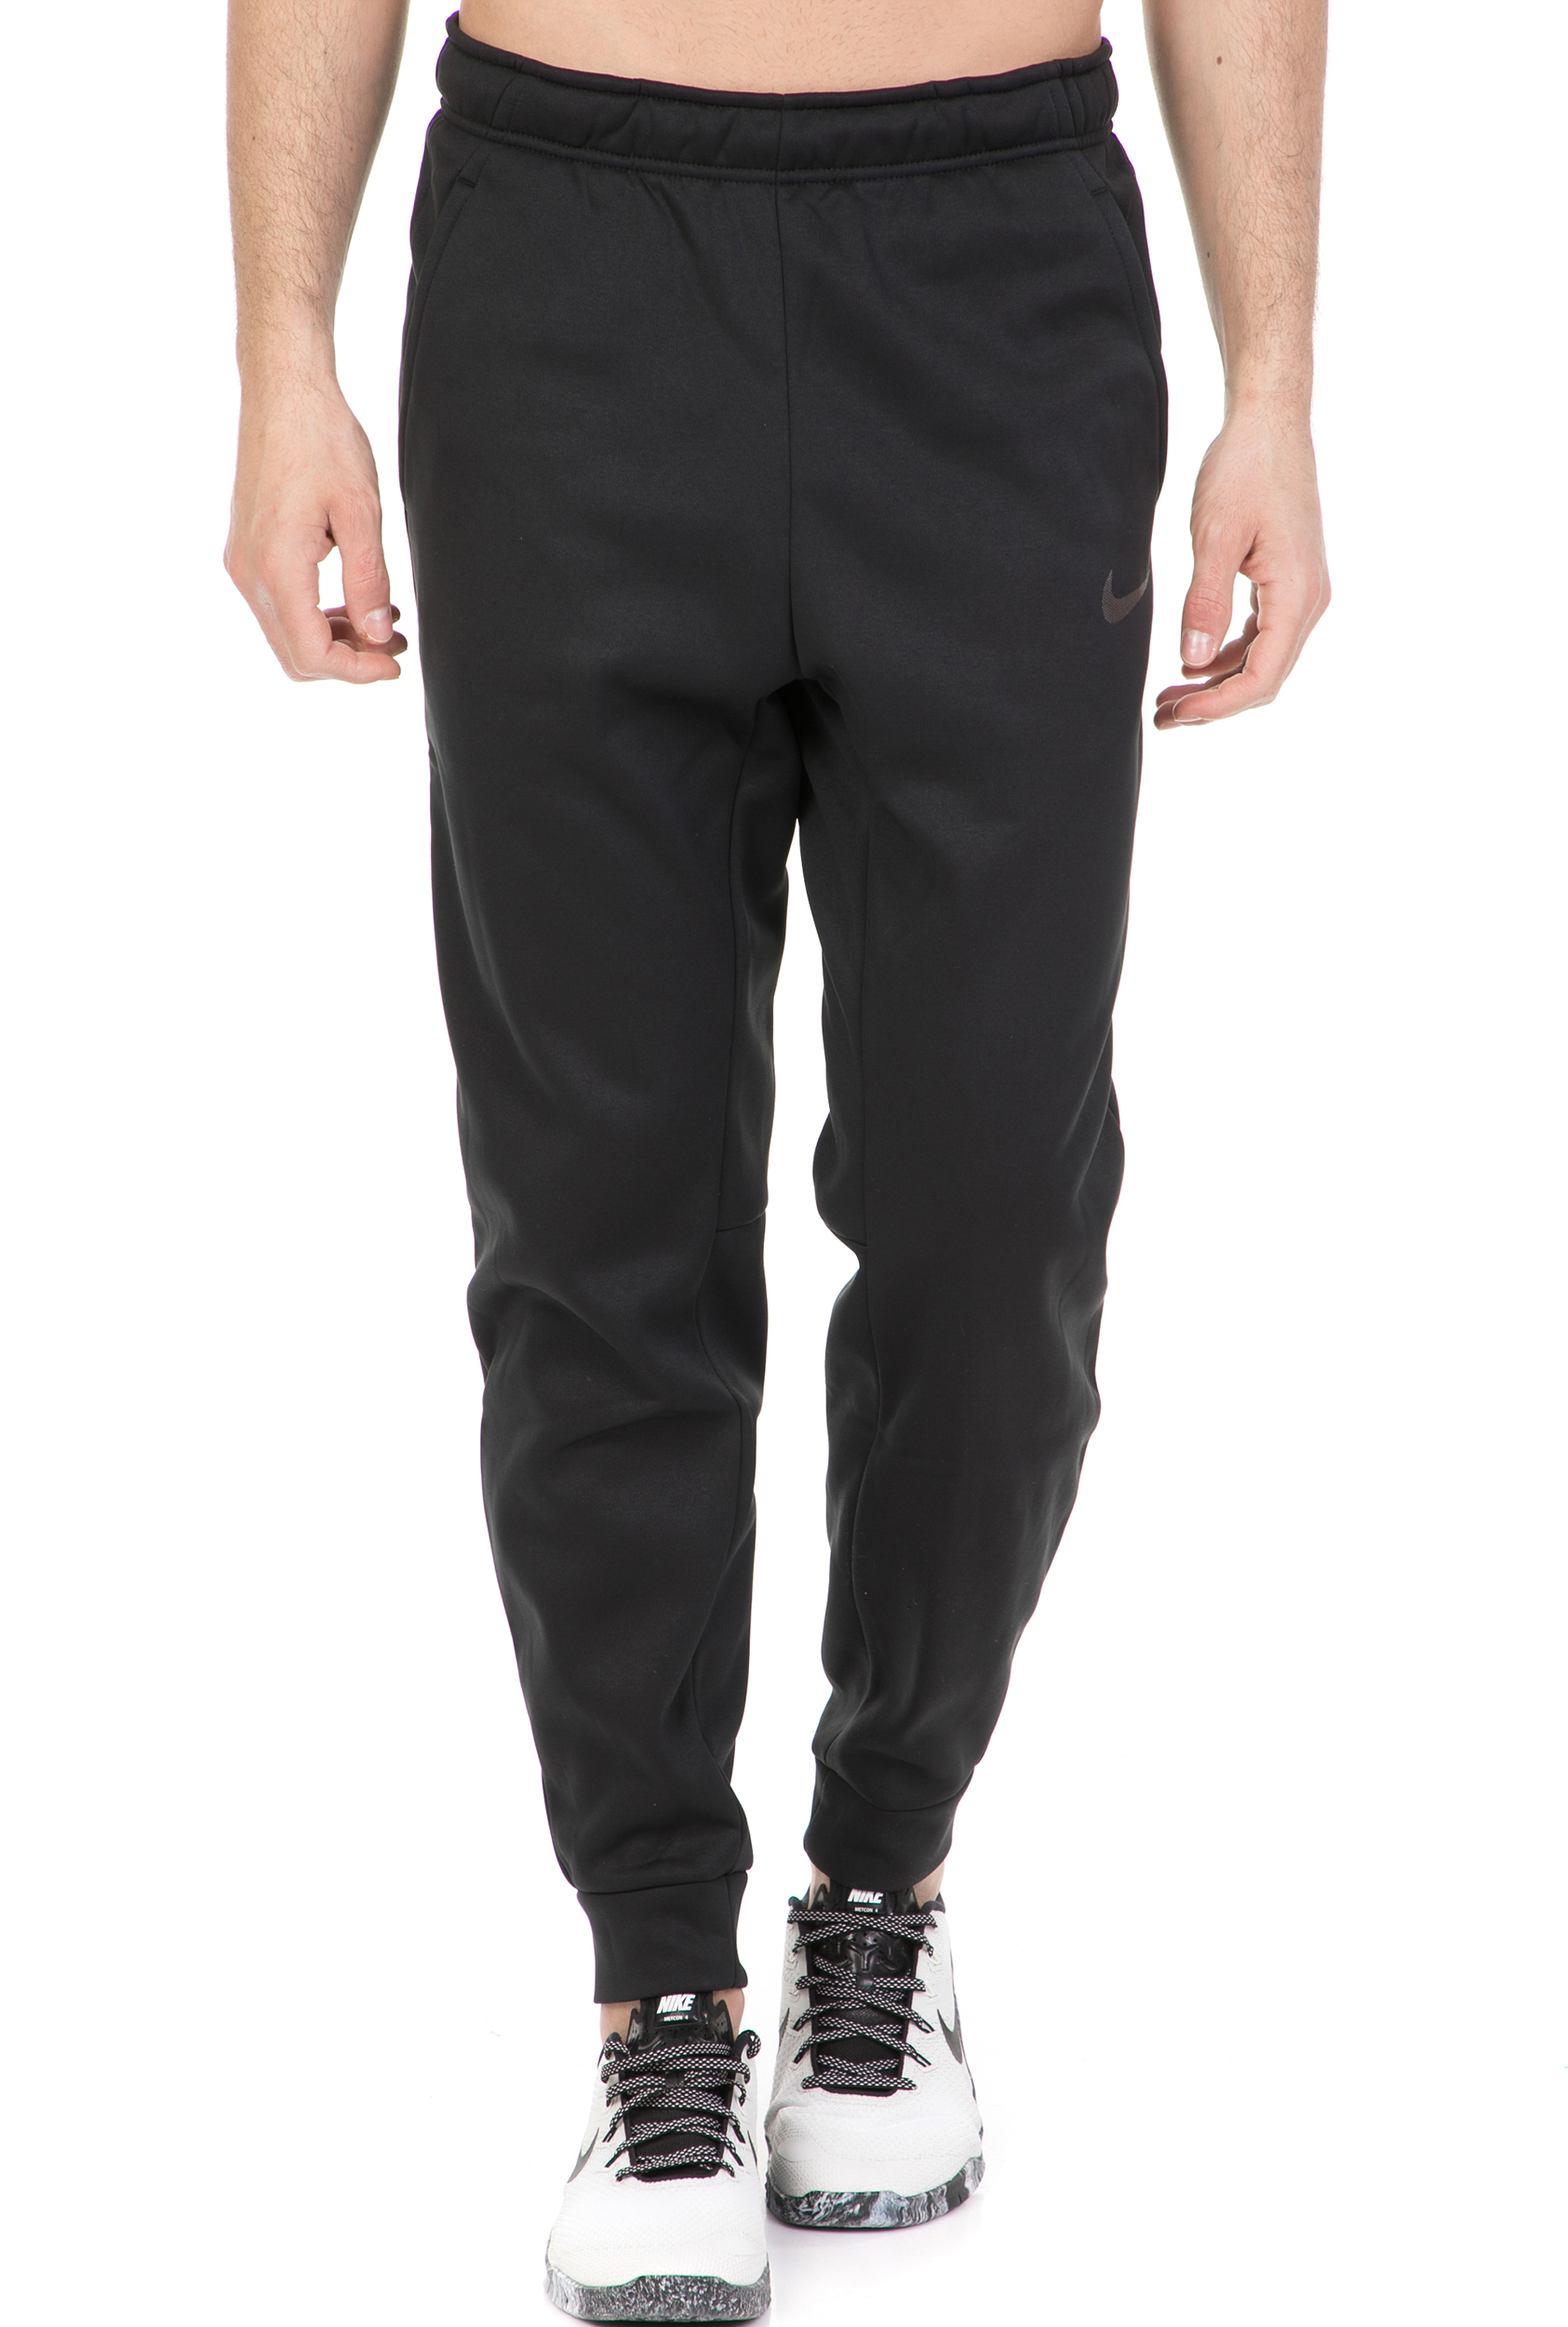 Ανδρικά/Ρούχα/Αθλητικά/Φόρμες NIKE - Ανδρικό παντελόνι προπόνησης NIKE THΕRMA μαύρο